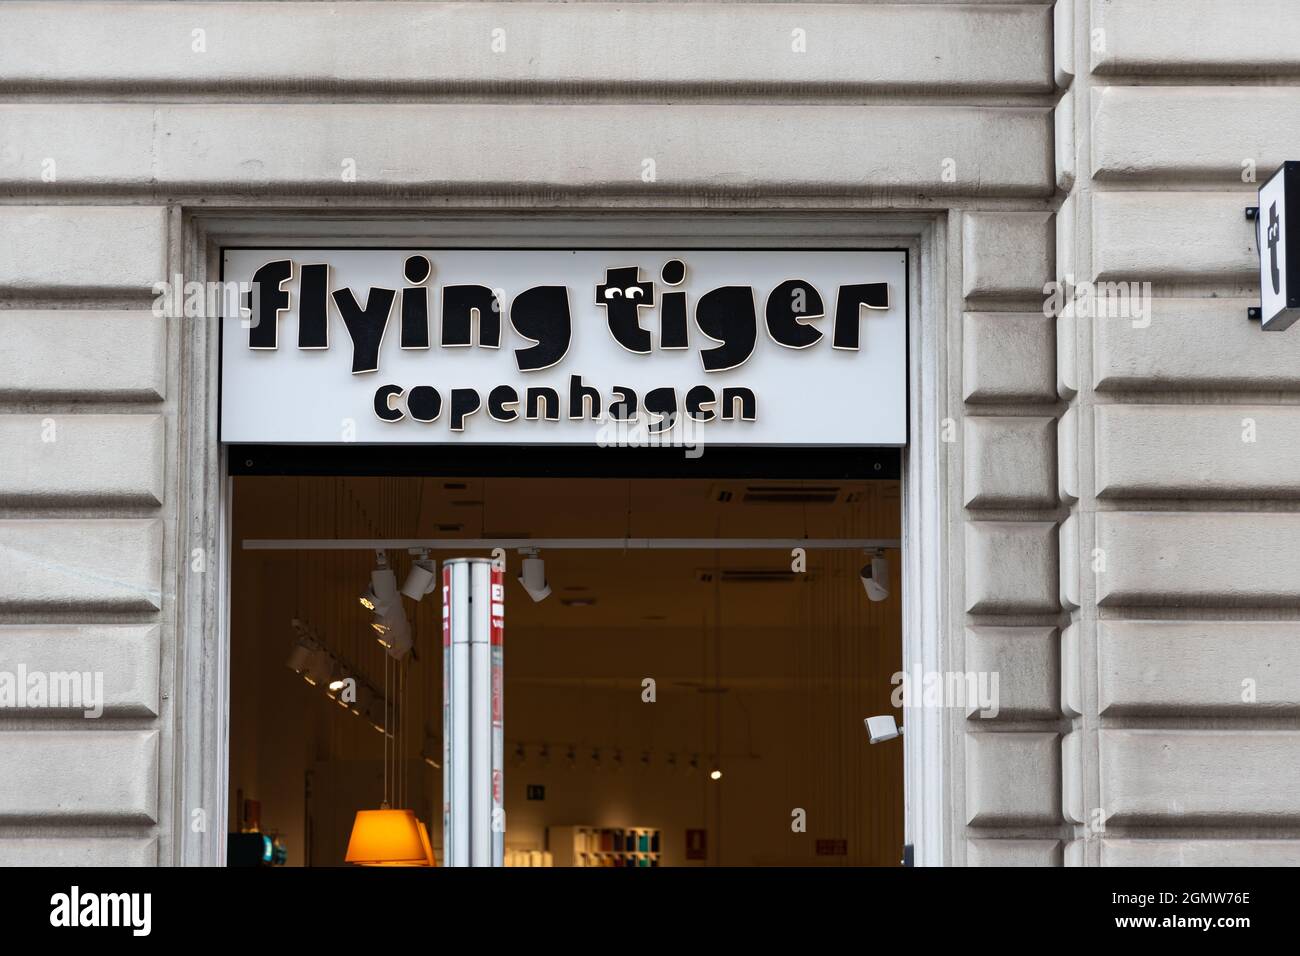 VALENCE, ESPAGNE - 13 SEPTEMBRE 2021 : magasin Flying Tiger Copenhagen. C'est une chaîne de magasins d'accessoires et de décoration Banque D'Images